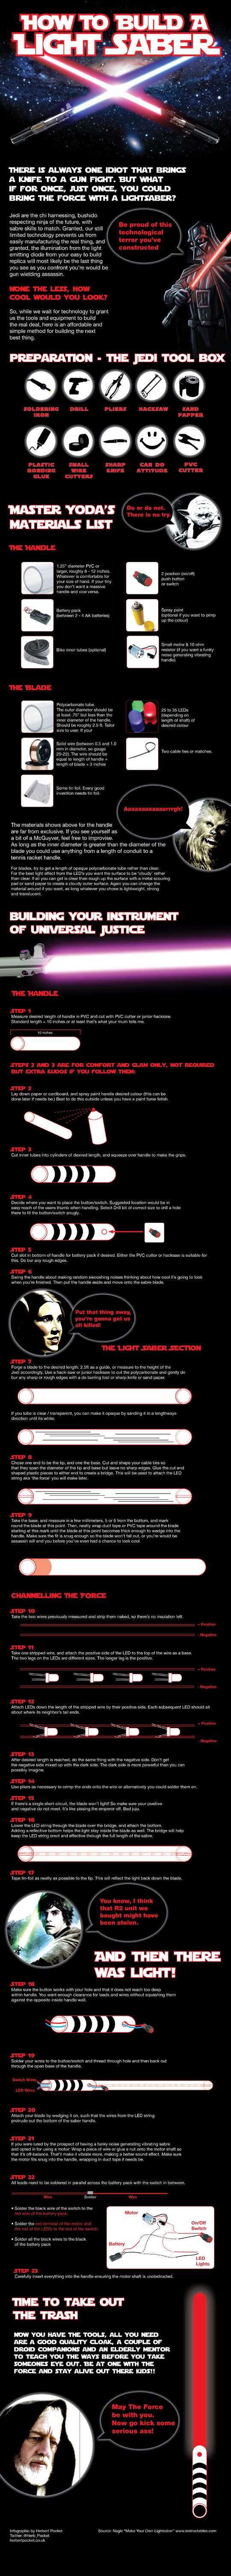 Cara-Cara Membuat Light Saber (Infographic)